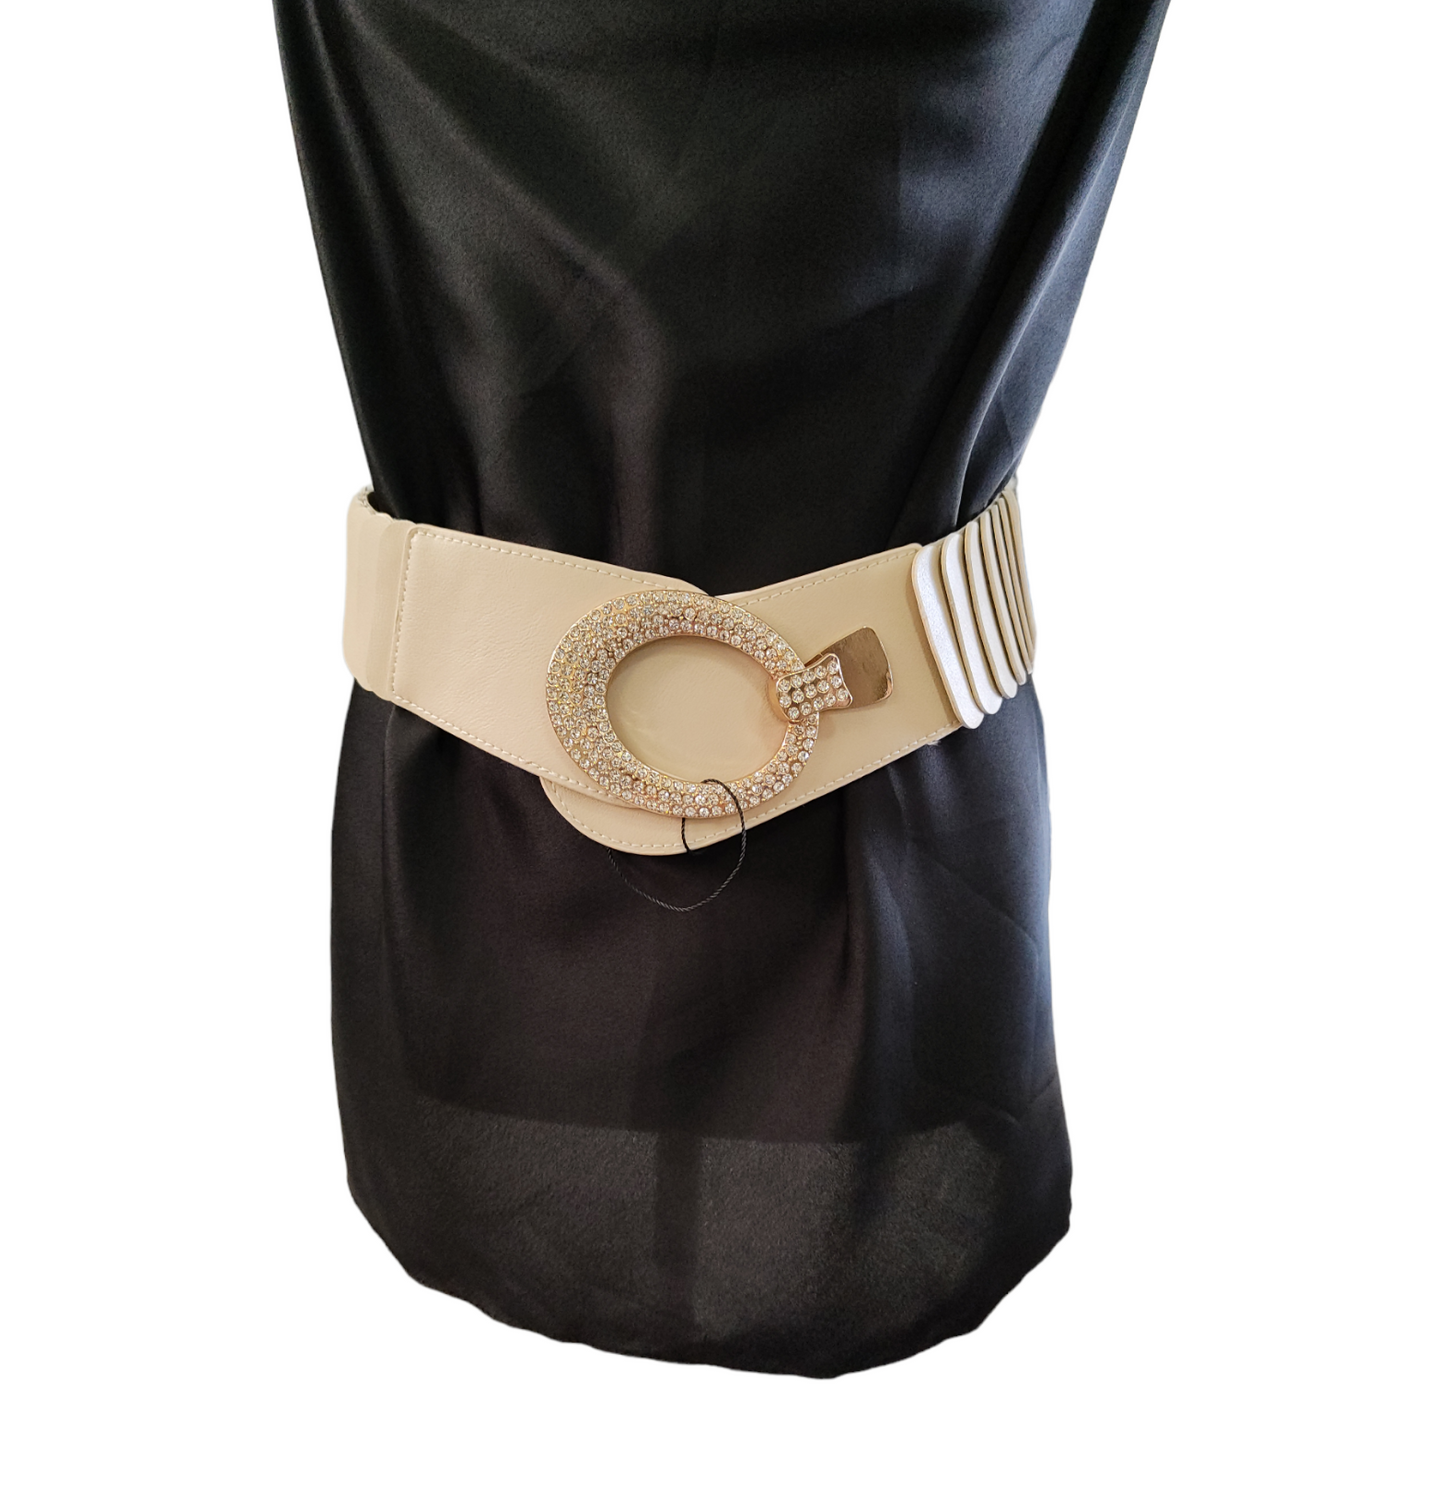 Cintura Donna a Fascia Elasticizzata con Fibbia Ovale Inserti in Eco Pelle e Strass